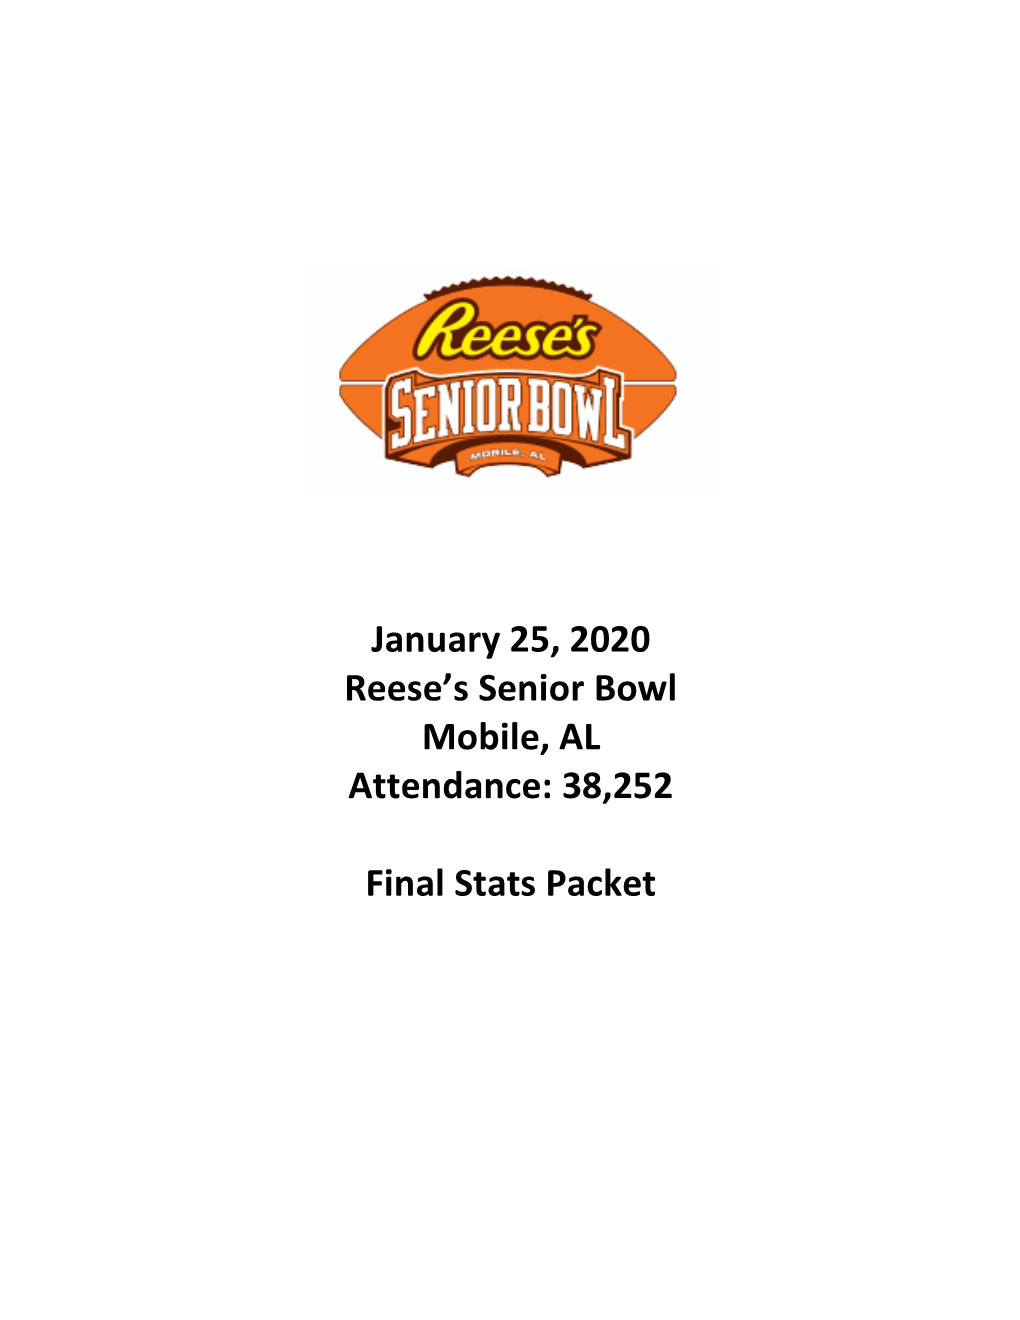 January 25, 2020 Reese's Senior Bowl Mobile, AL Attendance